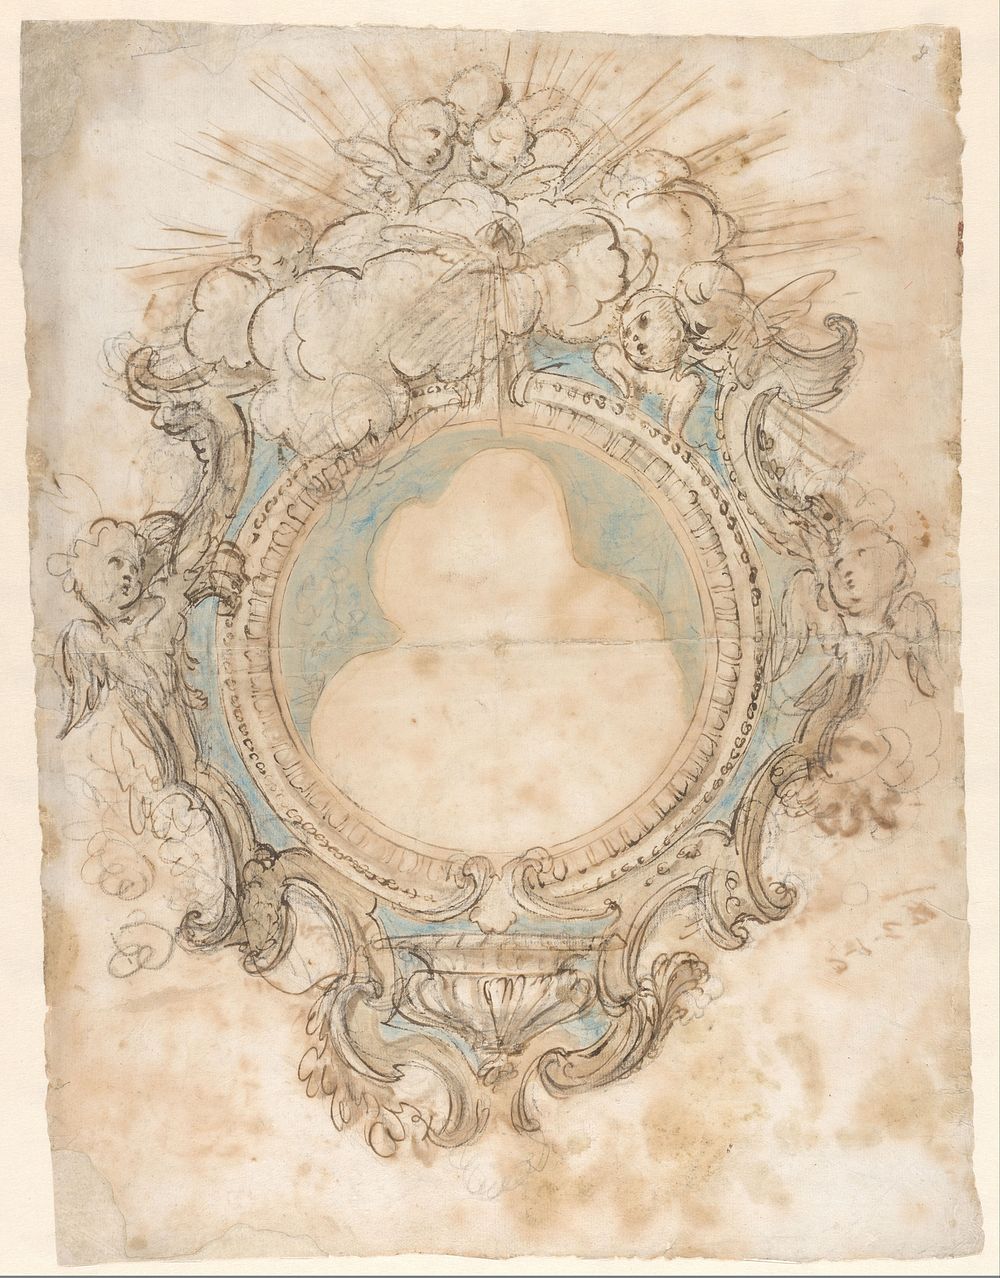 Ontwerp voor een hangend wijwatervat (c. 1765 - c. 1775) by Luigi Valadier